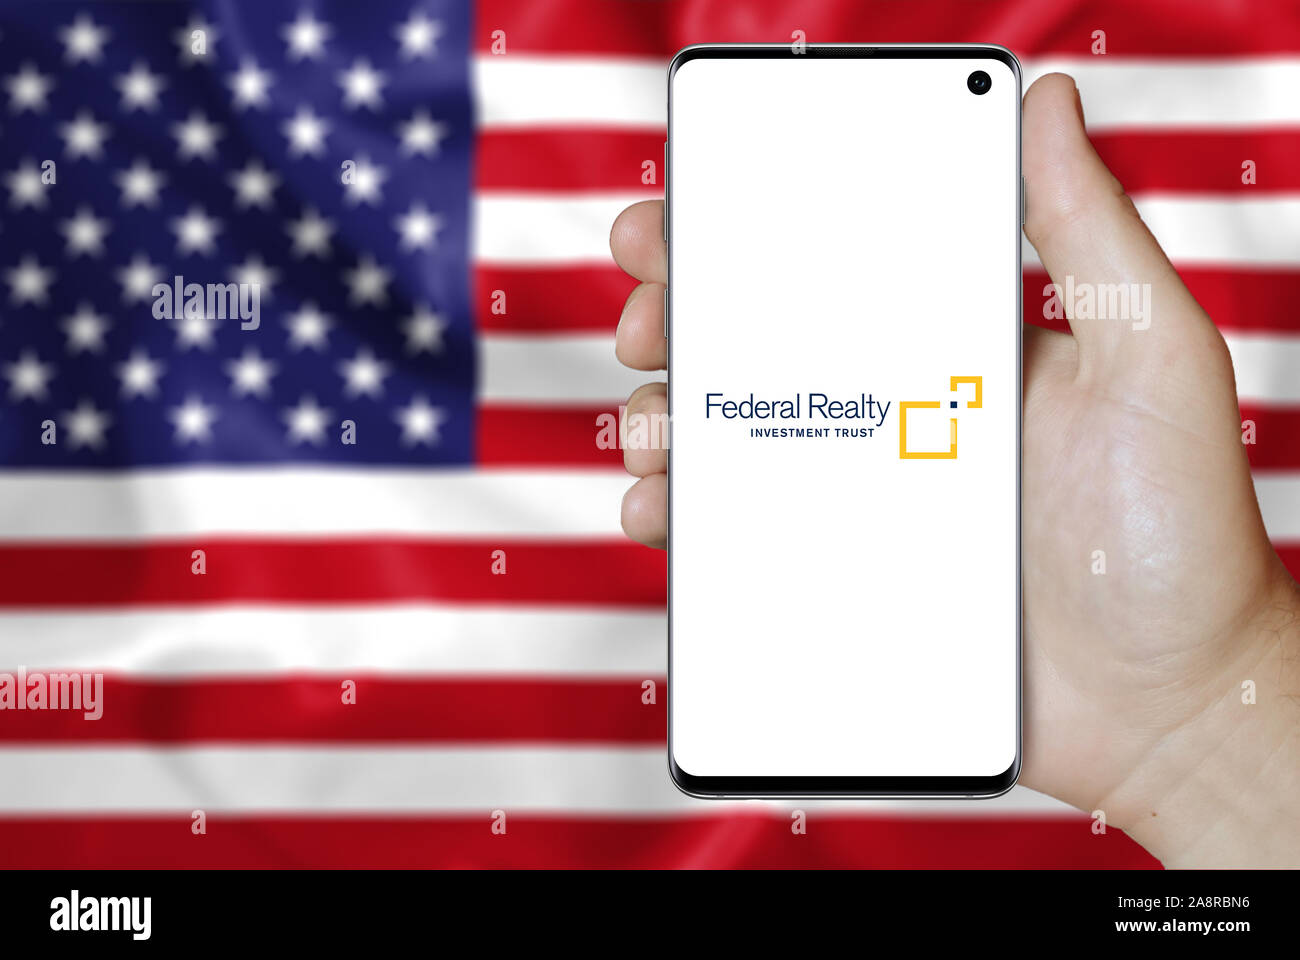 Il logo della società pubblica Federal Realty Investment Trust visualizzato su uno smartphone. Bandiera degli Stati Uniti sullo sfondo. Credito: PIXDUCE Foto Stock